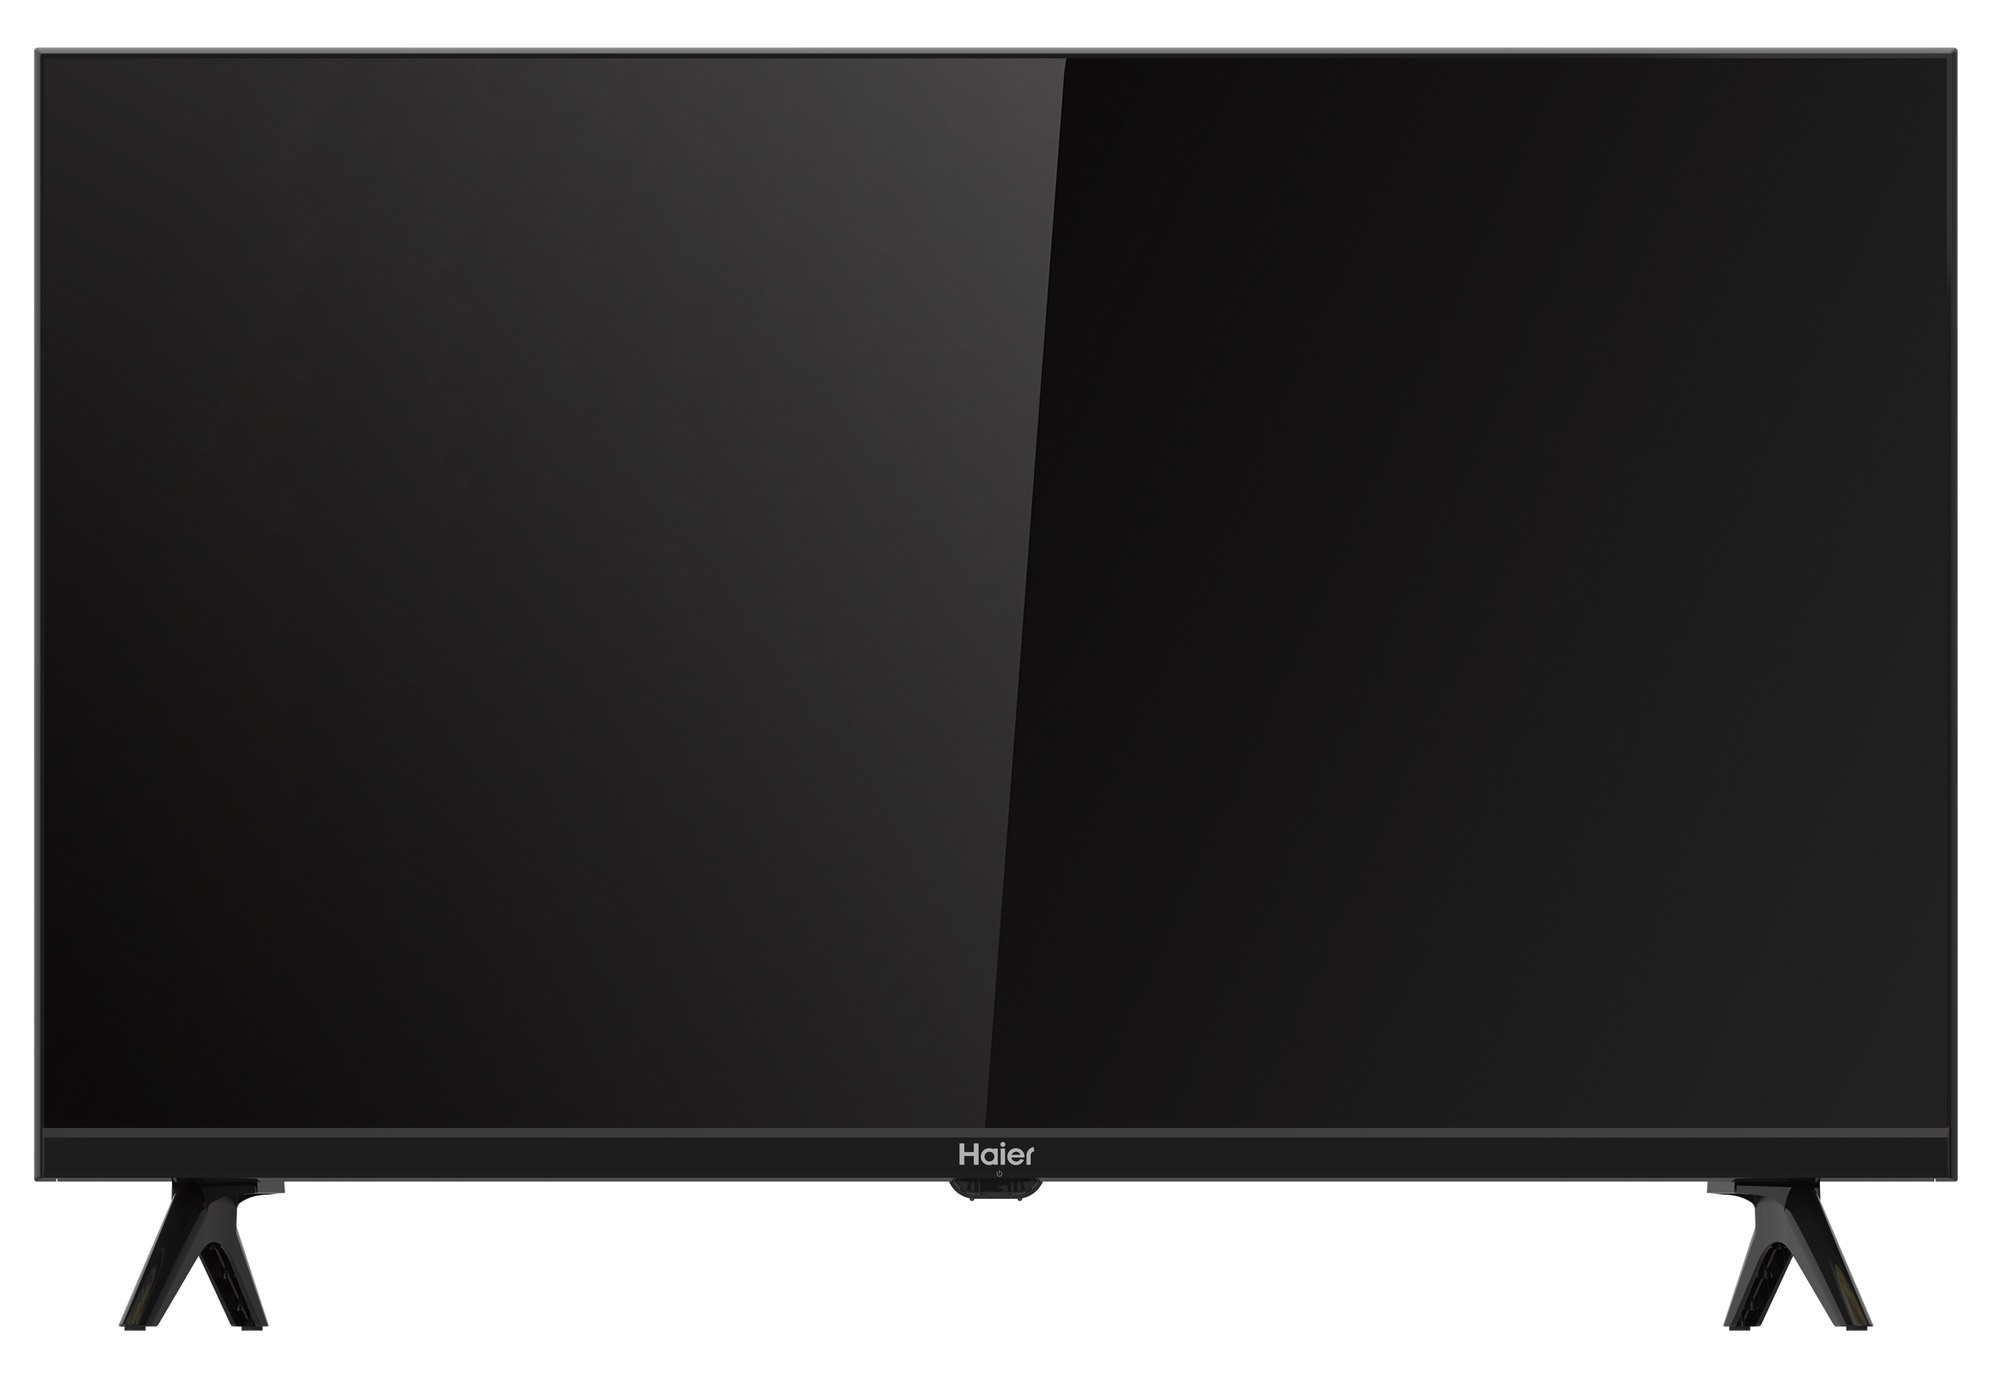 Haier 32 Smart Tv S1 Купить